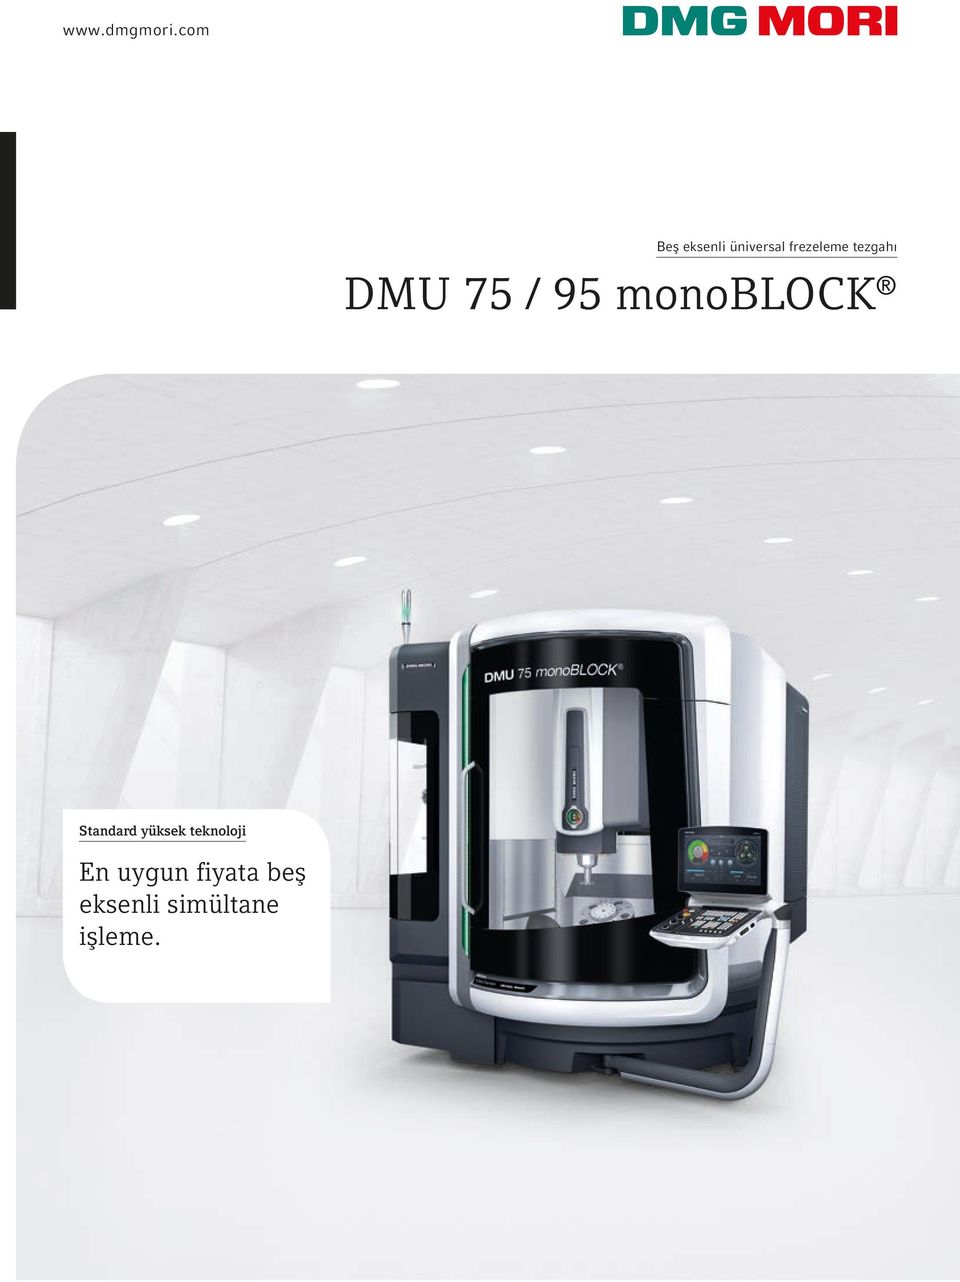 tezgahı DMU 75 / 95 monoblock